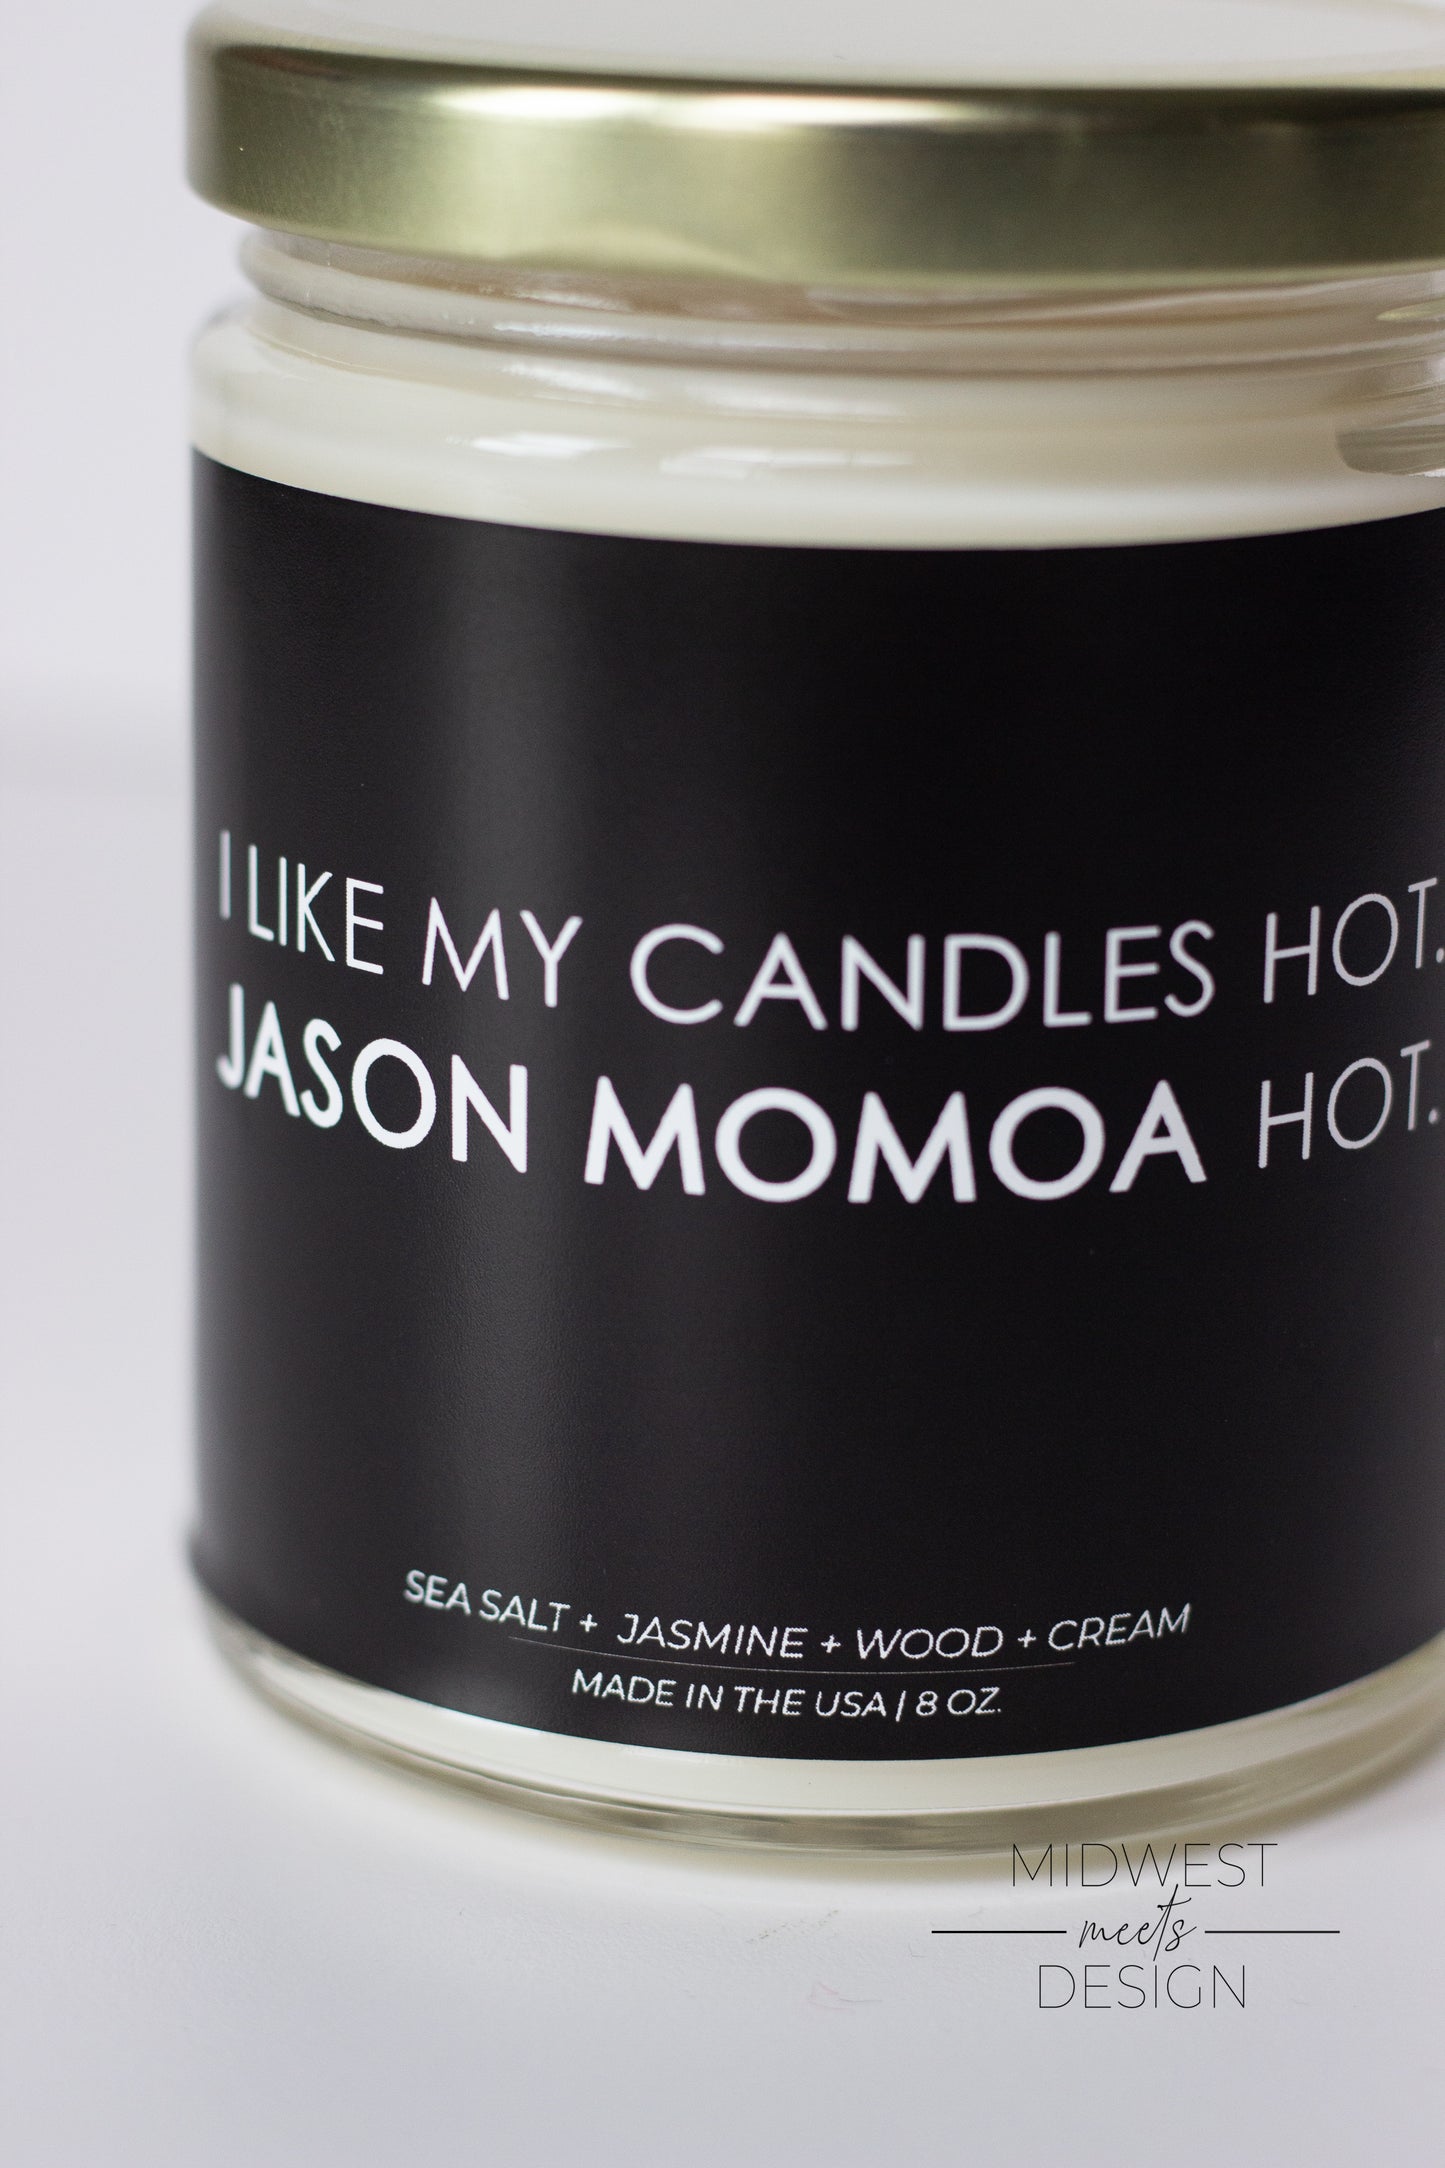 Jason Momoa Hot Candle